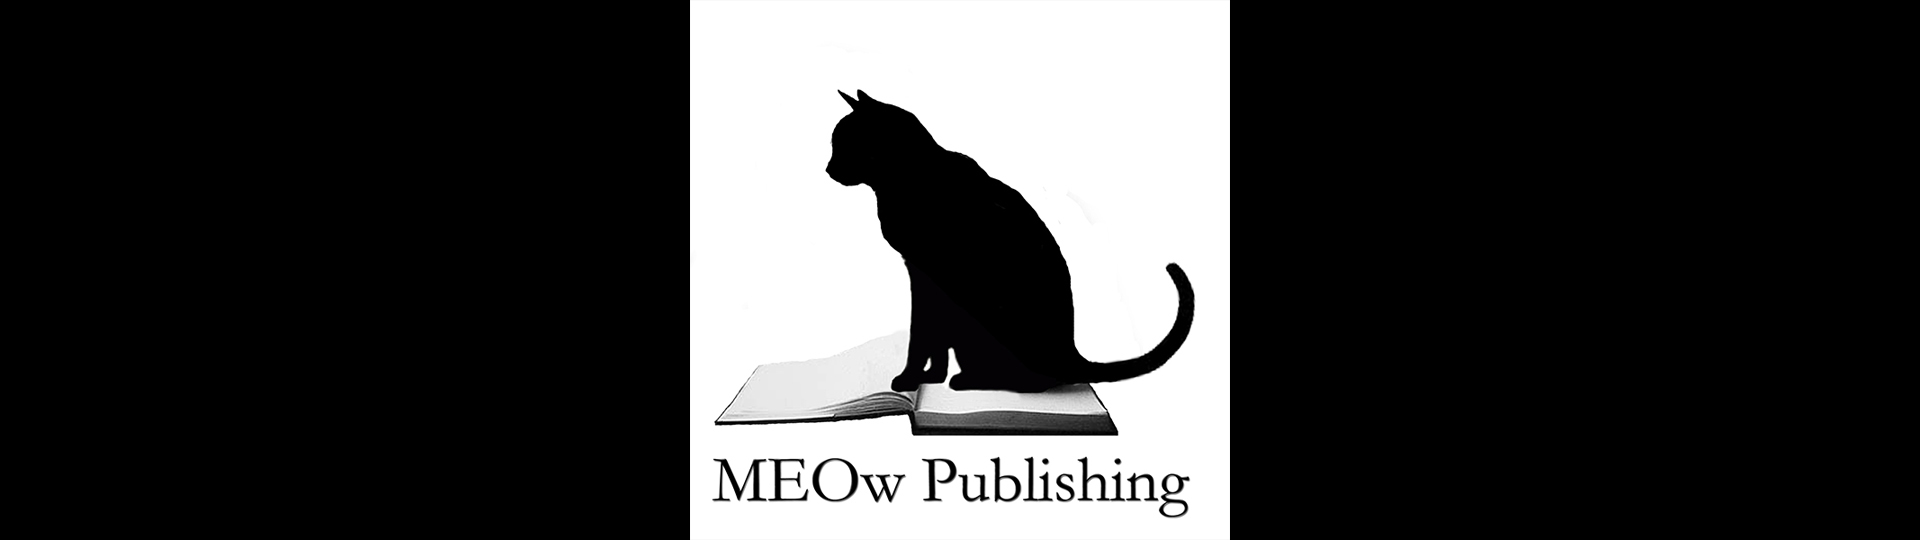 MEOw Publishing